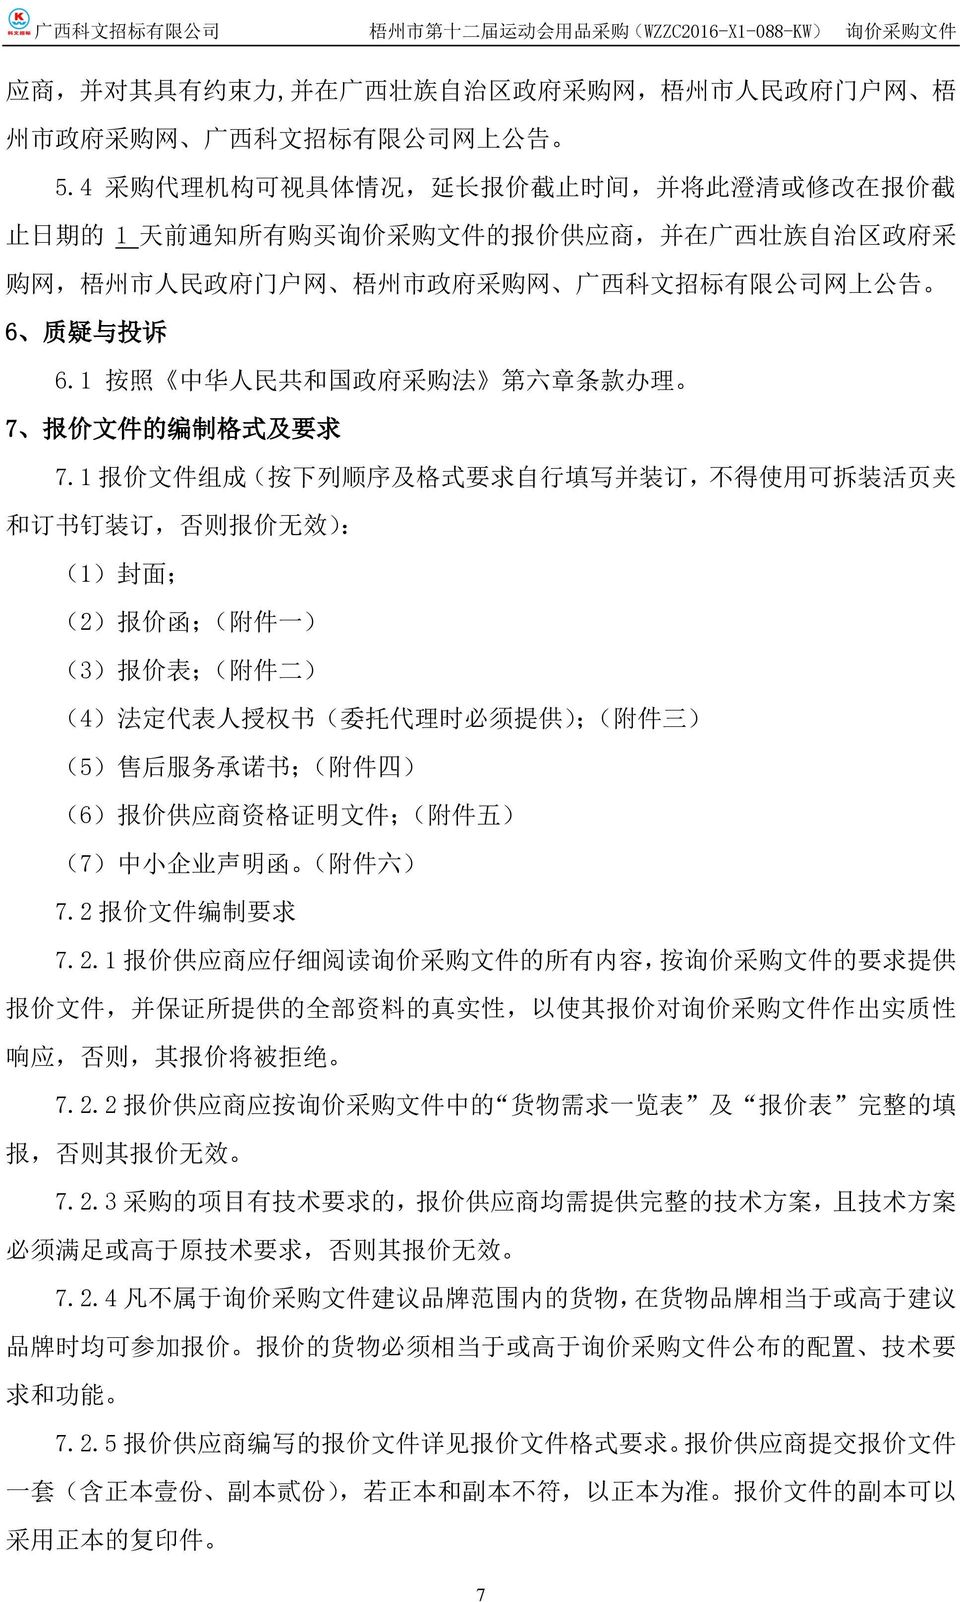 公 司 网 上 公 告 6 质 疑 与 投 诉 6.1 按 照 中 华 人 民 共 和 国 政 府 采 购 法 第 六 章 条 款 办 理 7 报 价 文 件 的 编 制 格 式 及 要 求 7.